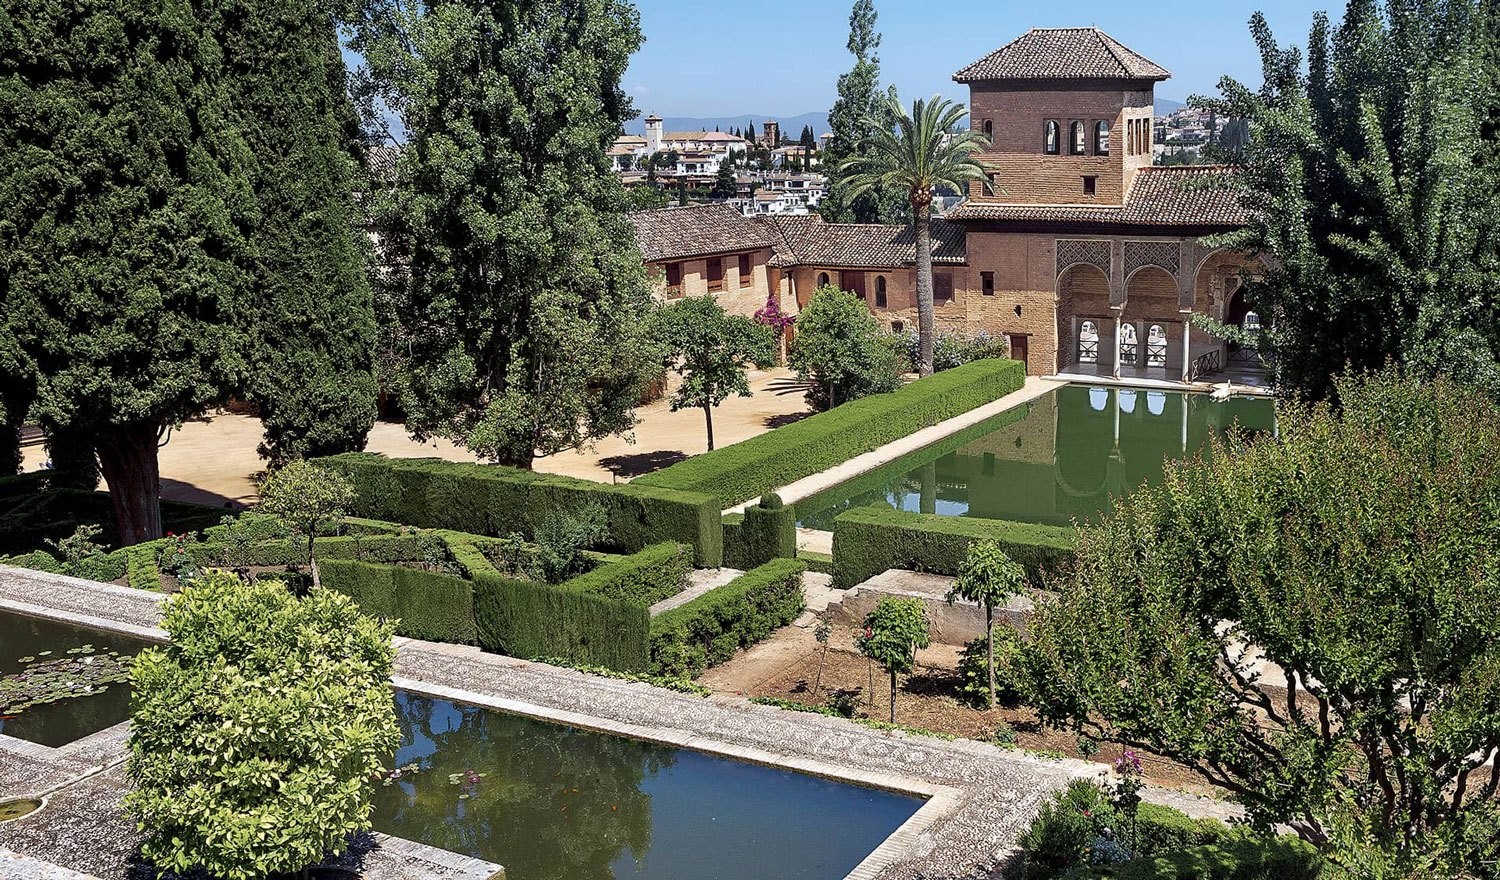 Libro de Lujo: Alhambra de Granada, un lugar único en el mundo